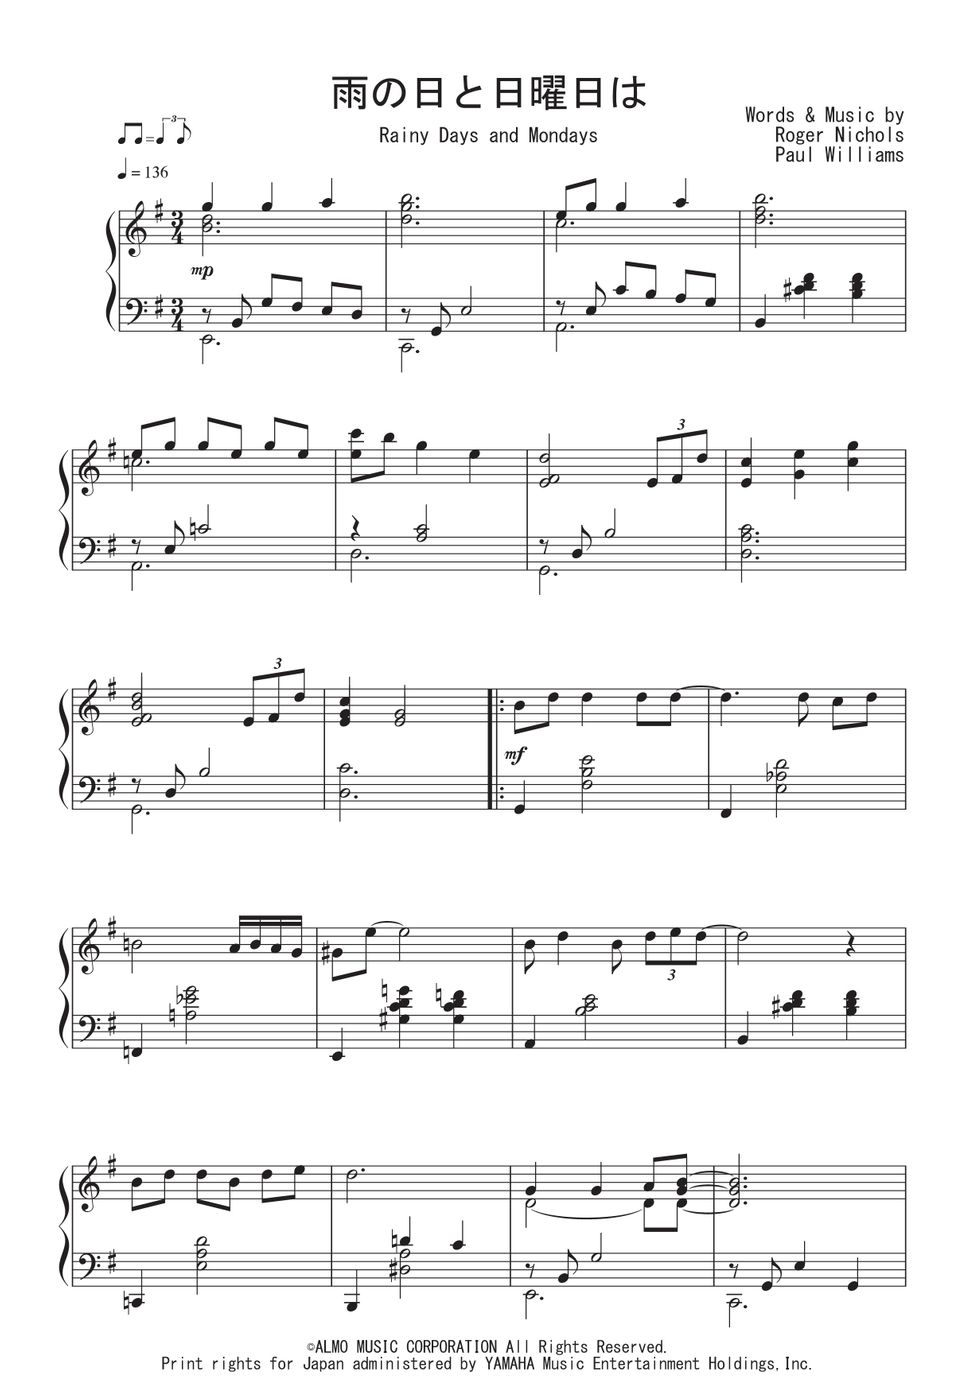 カーペンターズ - 雨の日と月曜日は (Jazz Waltz Ver.) by Peony